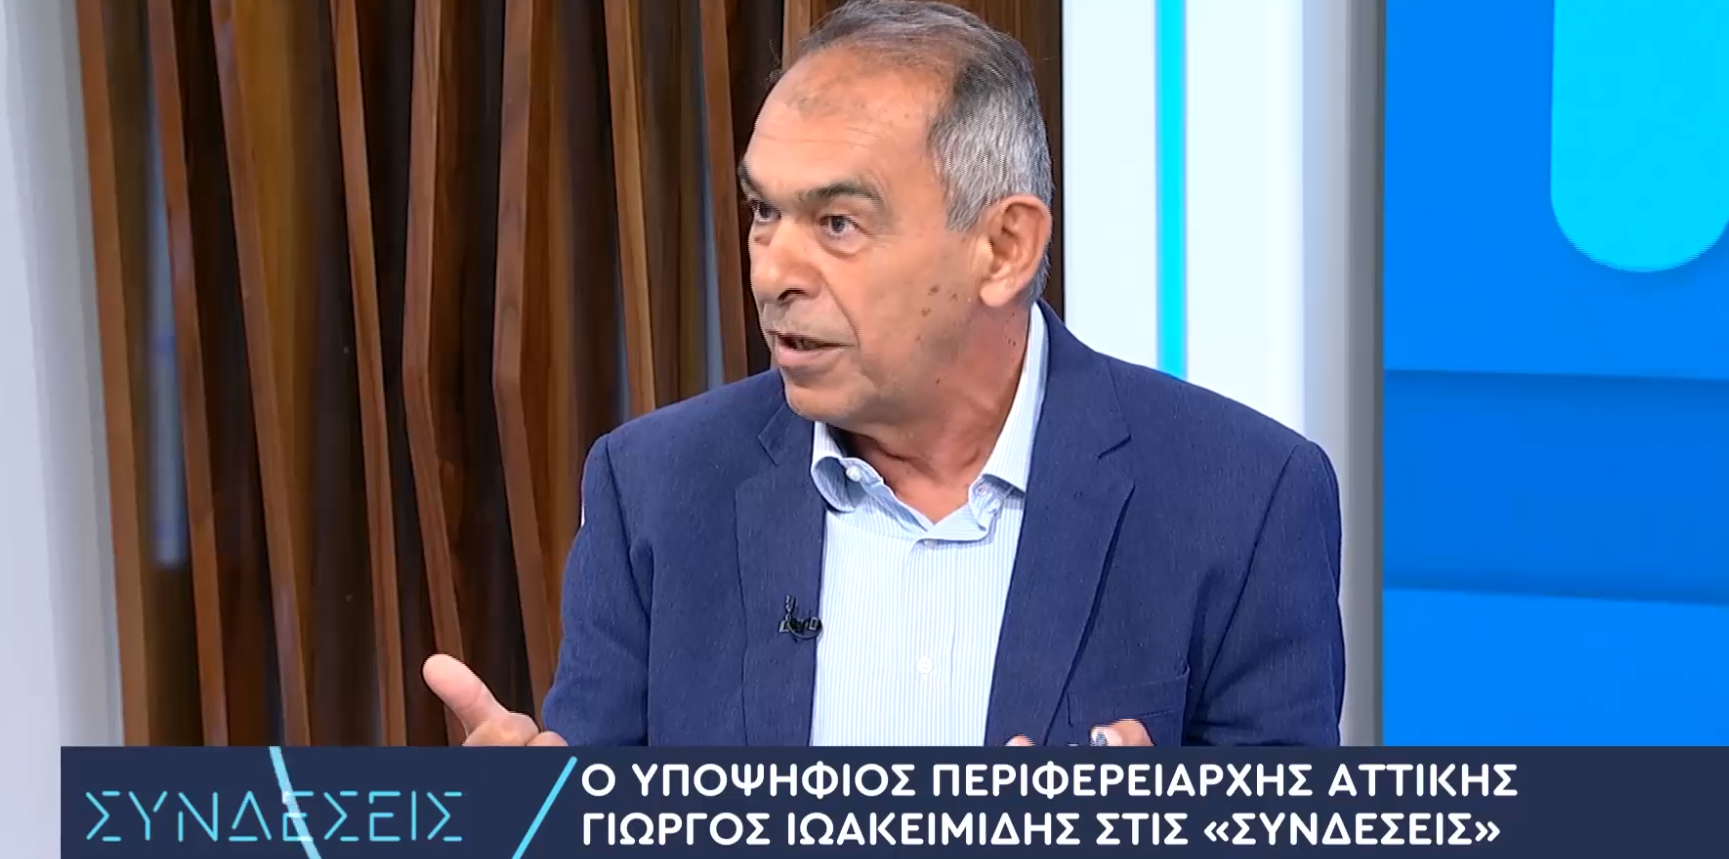 Γ. Ιωακειμίδης: Να φτιάξουμε μία αυτοδιοίκηση που θα ορίζεται από τους ίδιους τους πολίτες και θα υπηρετεί την αυτοδιοίκηση (video)